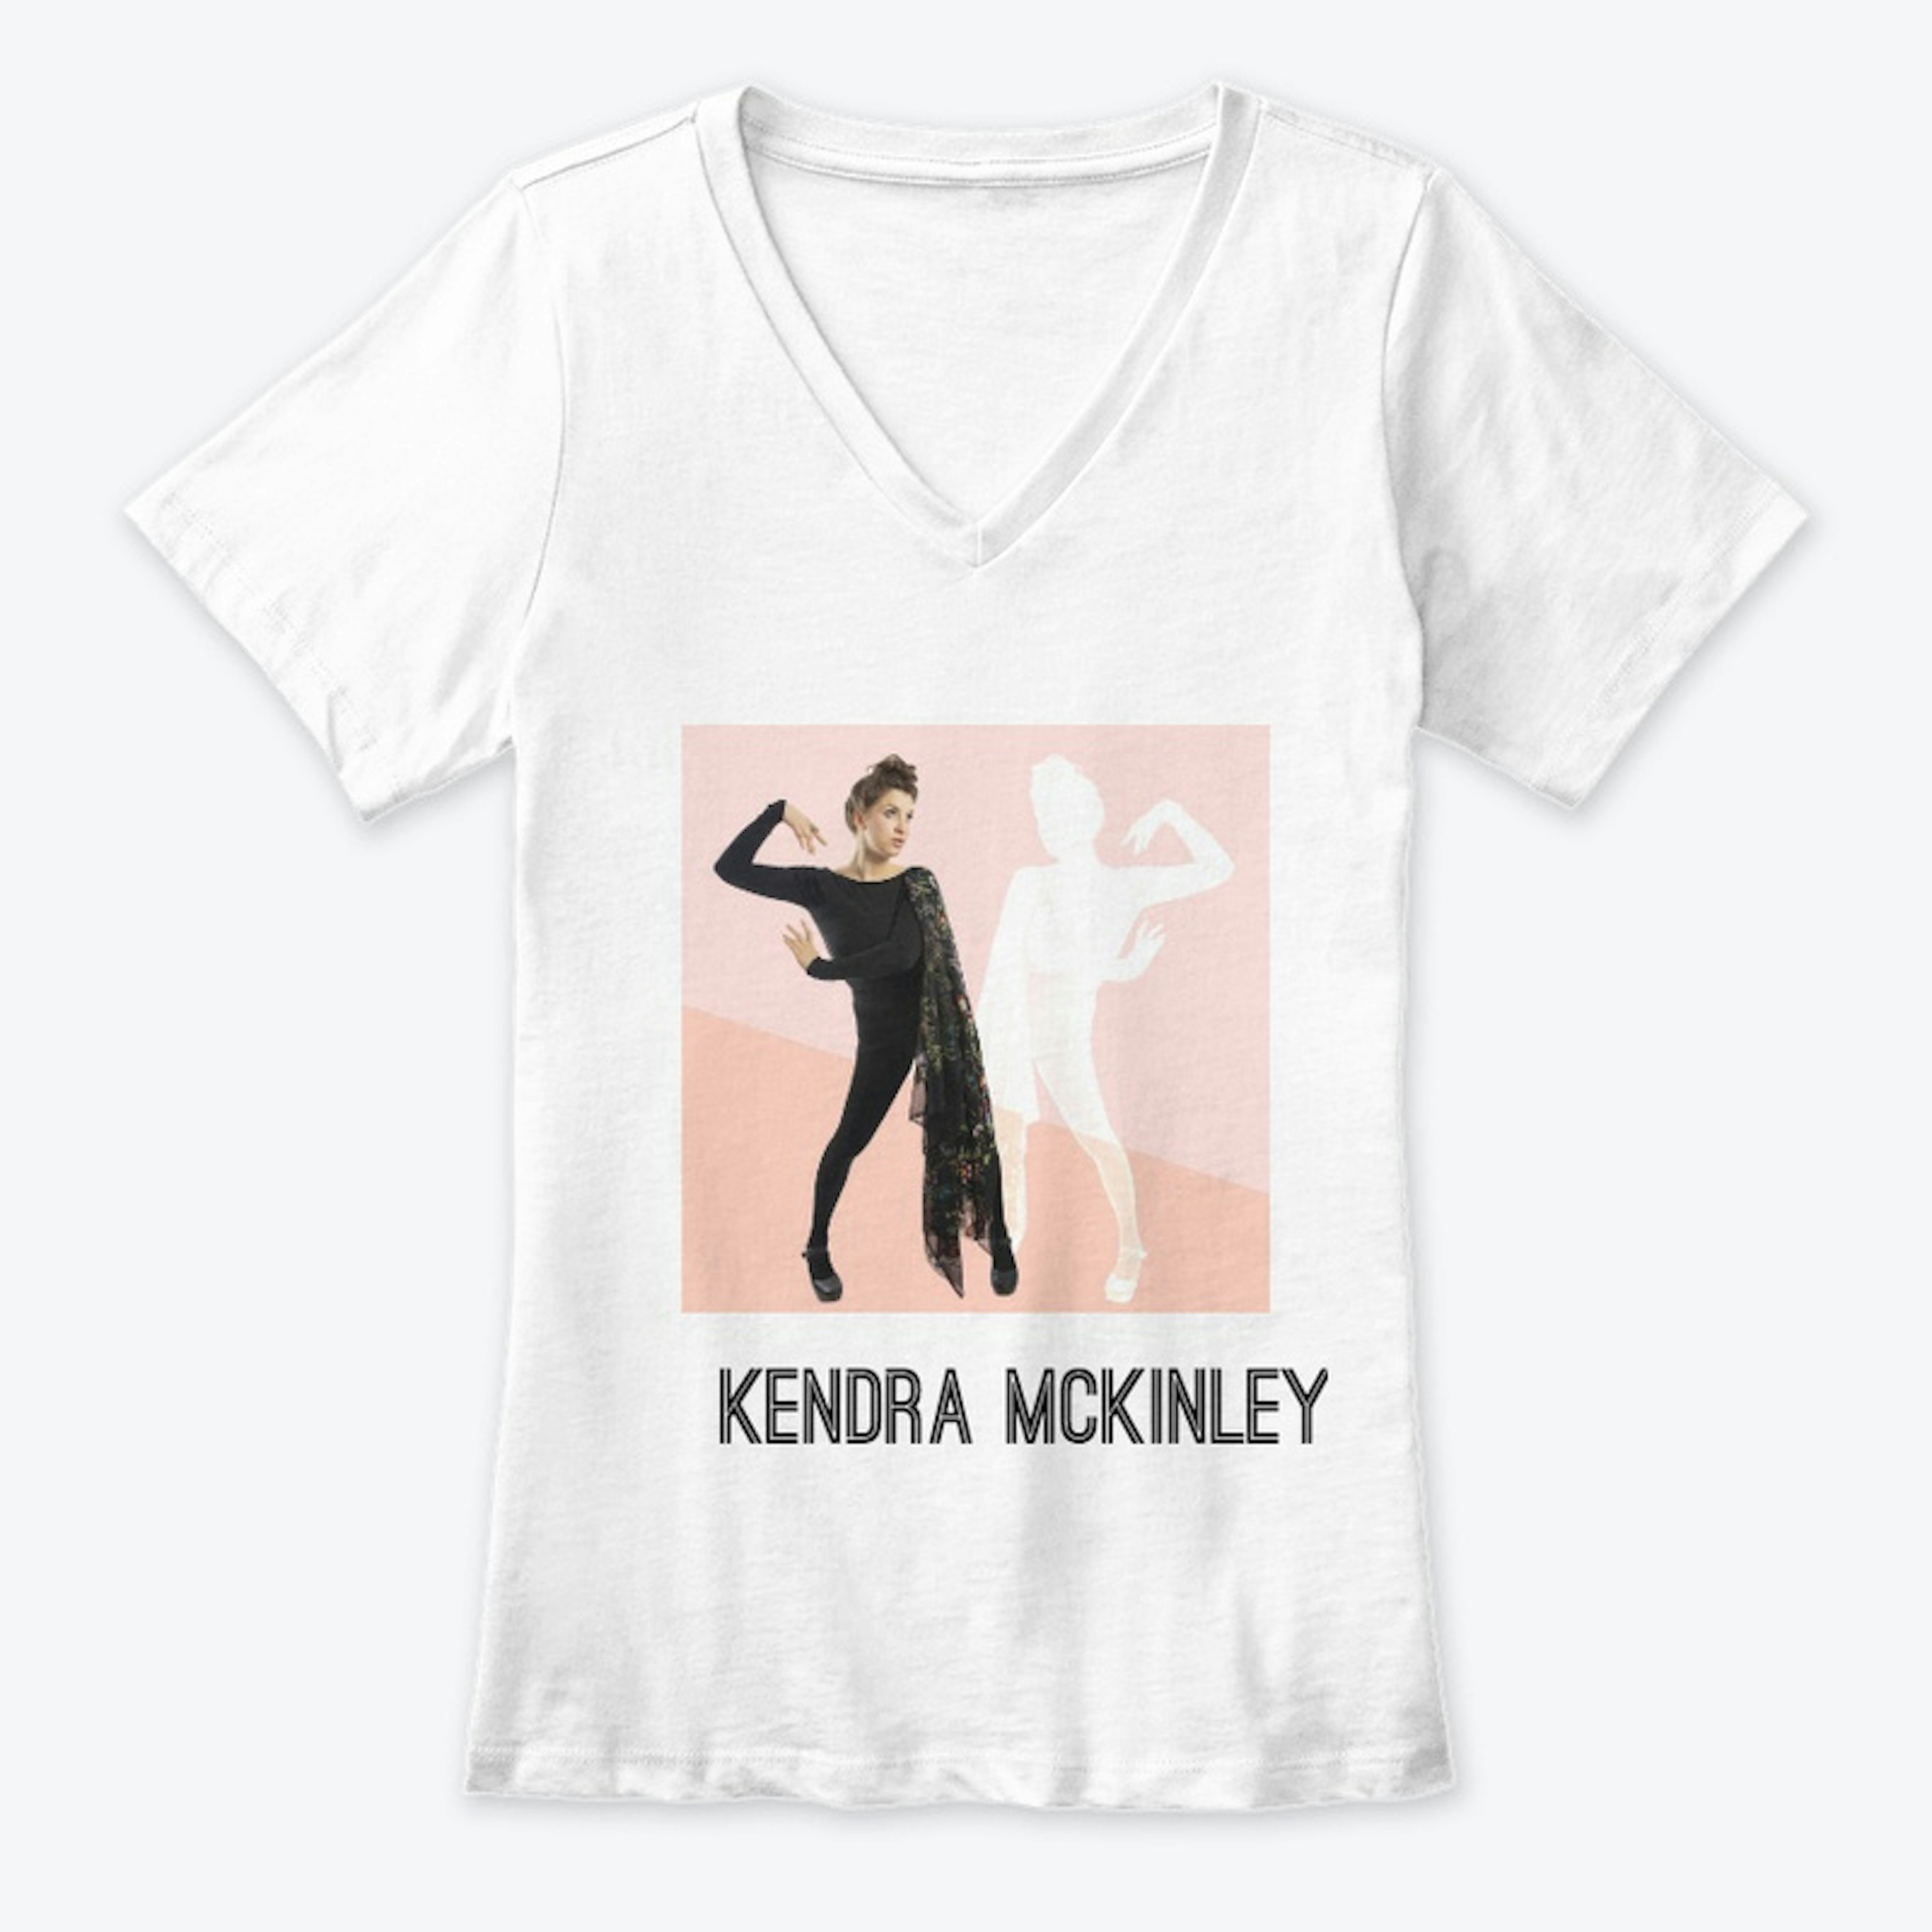 Kendra McKinley mirror